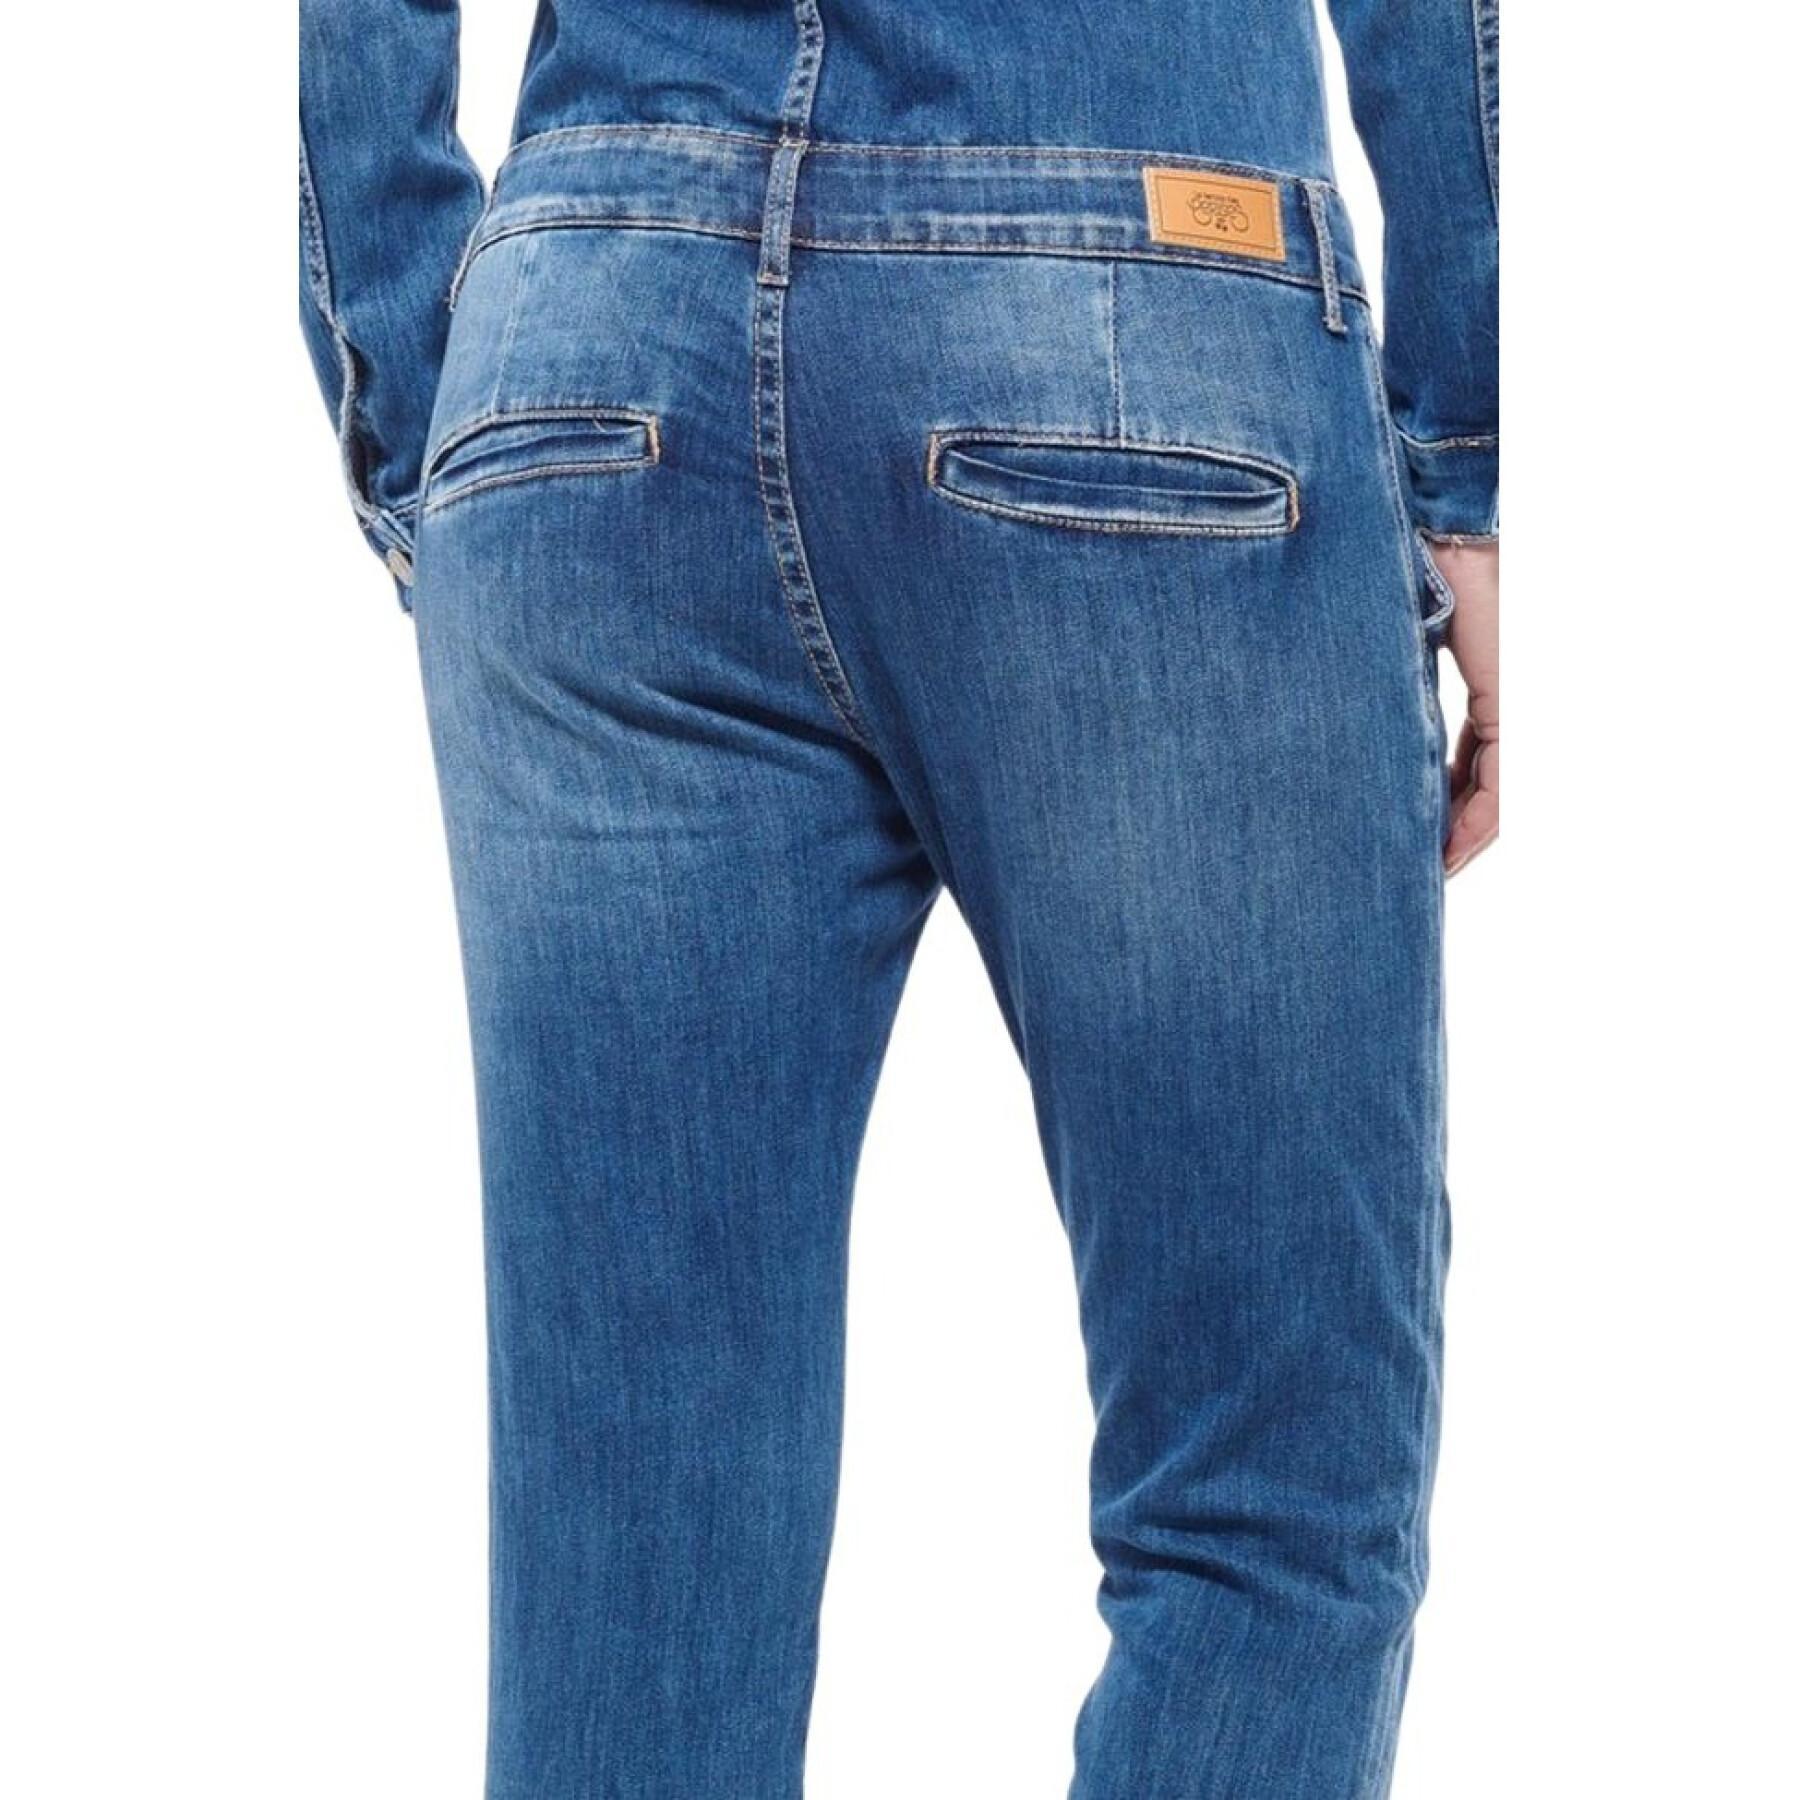 Jeans jumpsuit voor dames Le temps des cerises